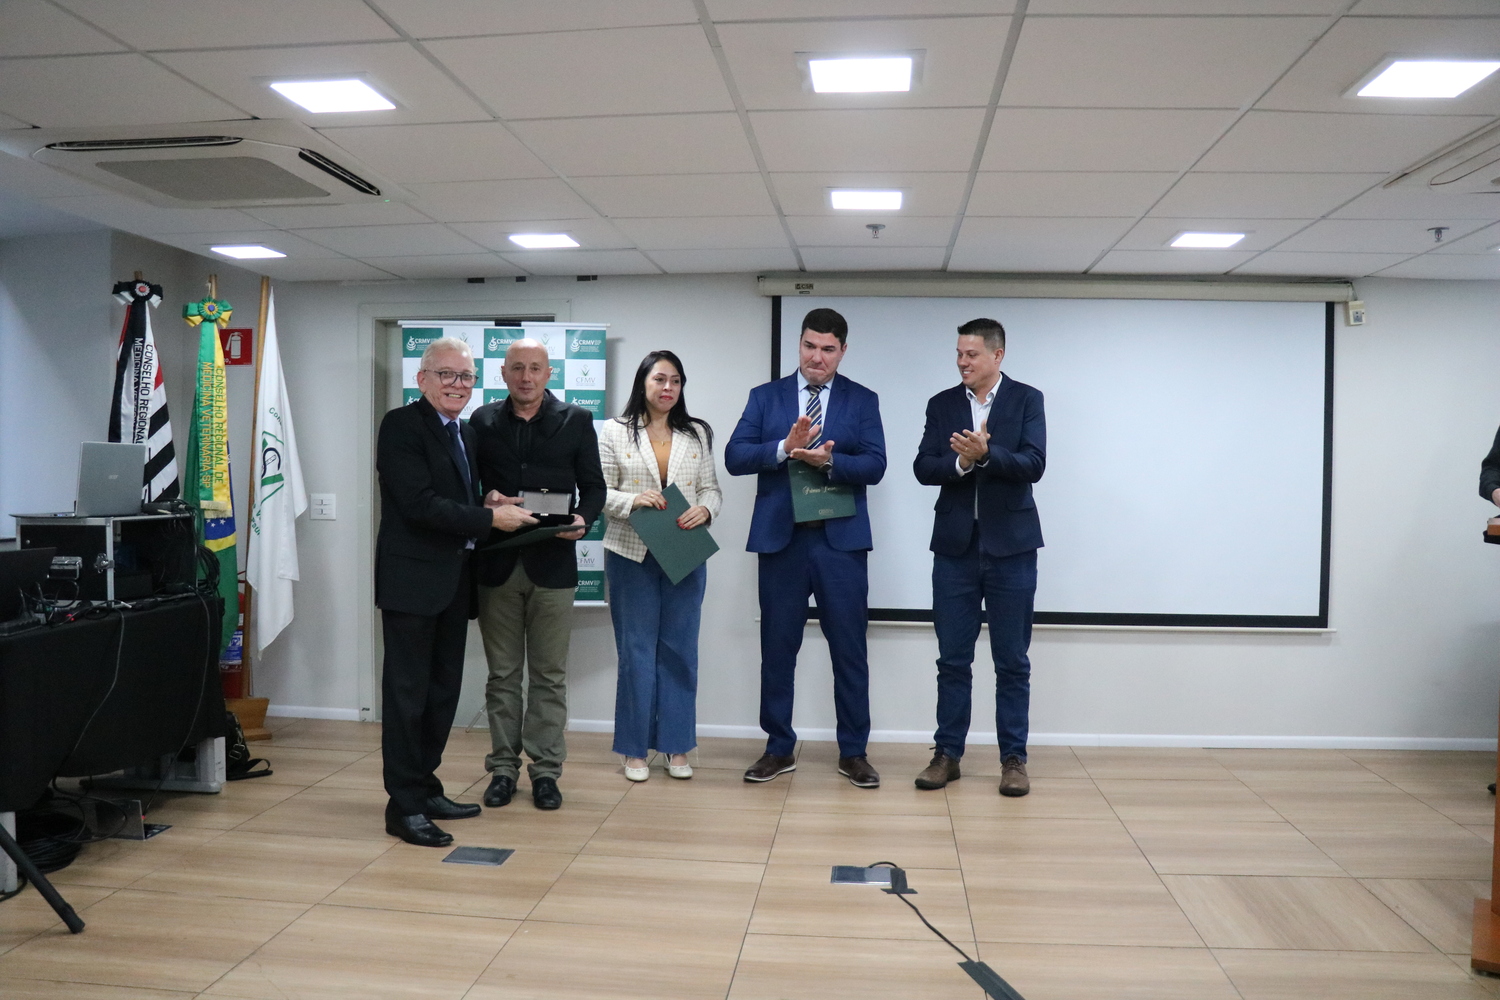 O presidente do CRMV-SP entrega placa a um dos médicos-veterinários homenageados pelo trabalho realizado no Rio Grande do Sul em auxílio ao Regional gaúcho.